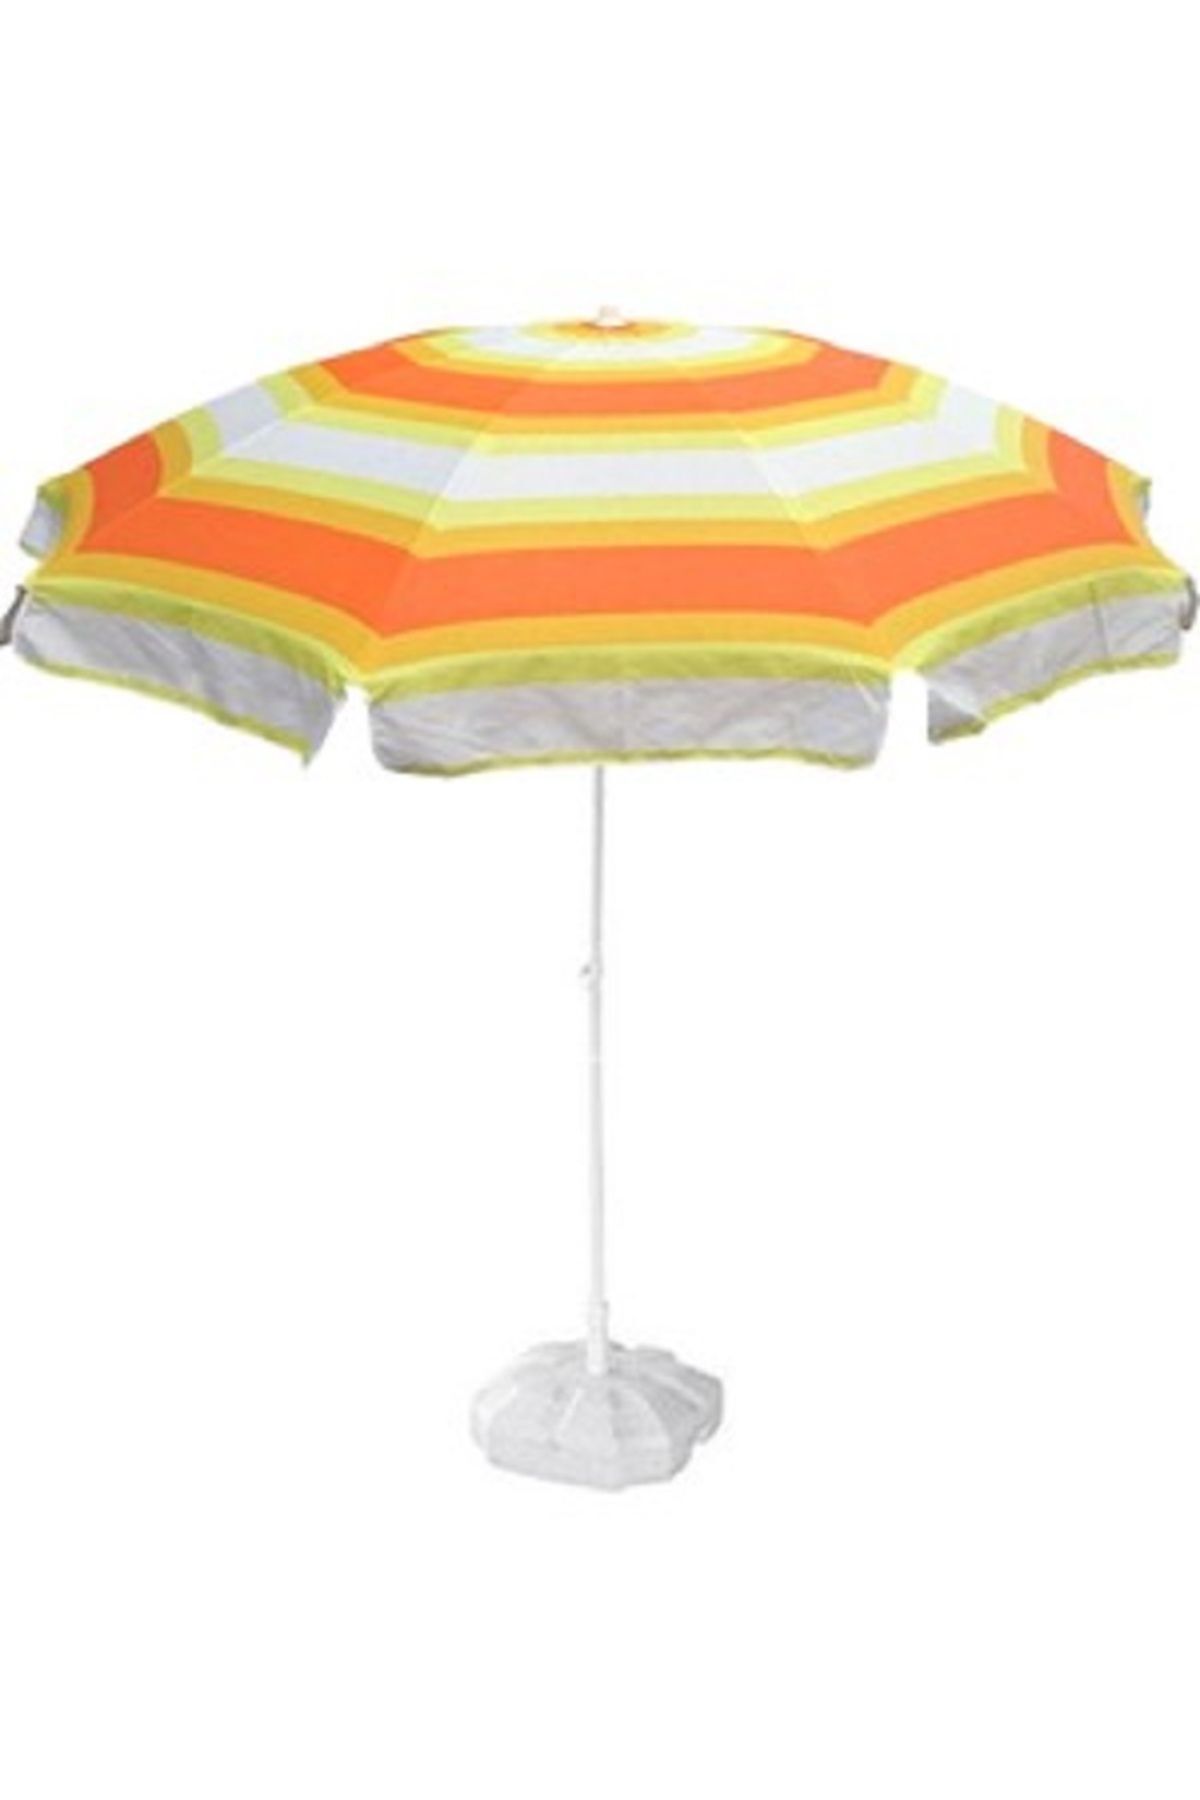 Zey Camping Zeycamping Plaj Bahçe Balkon Şemsiyesi 200 Cm Çapında Taşıma Çantası (BİDON HARİÇTİR)